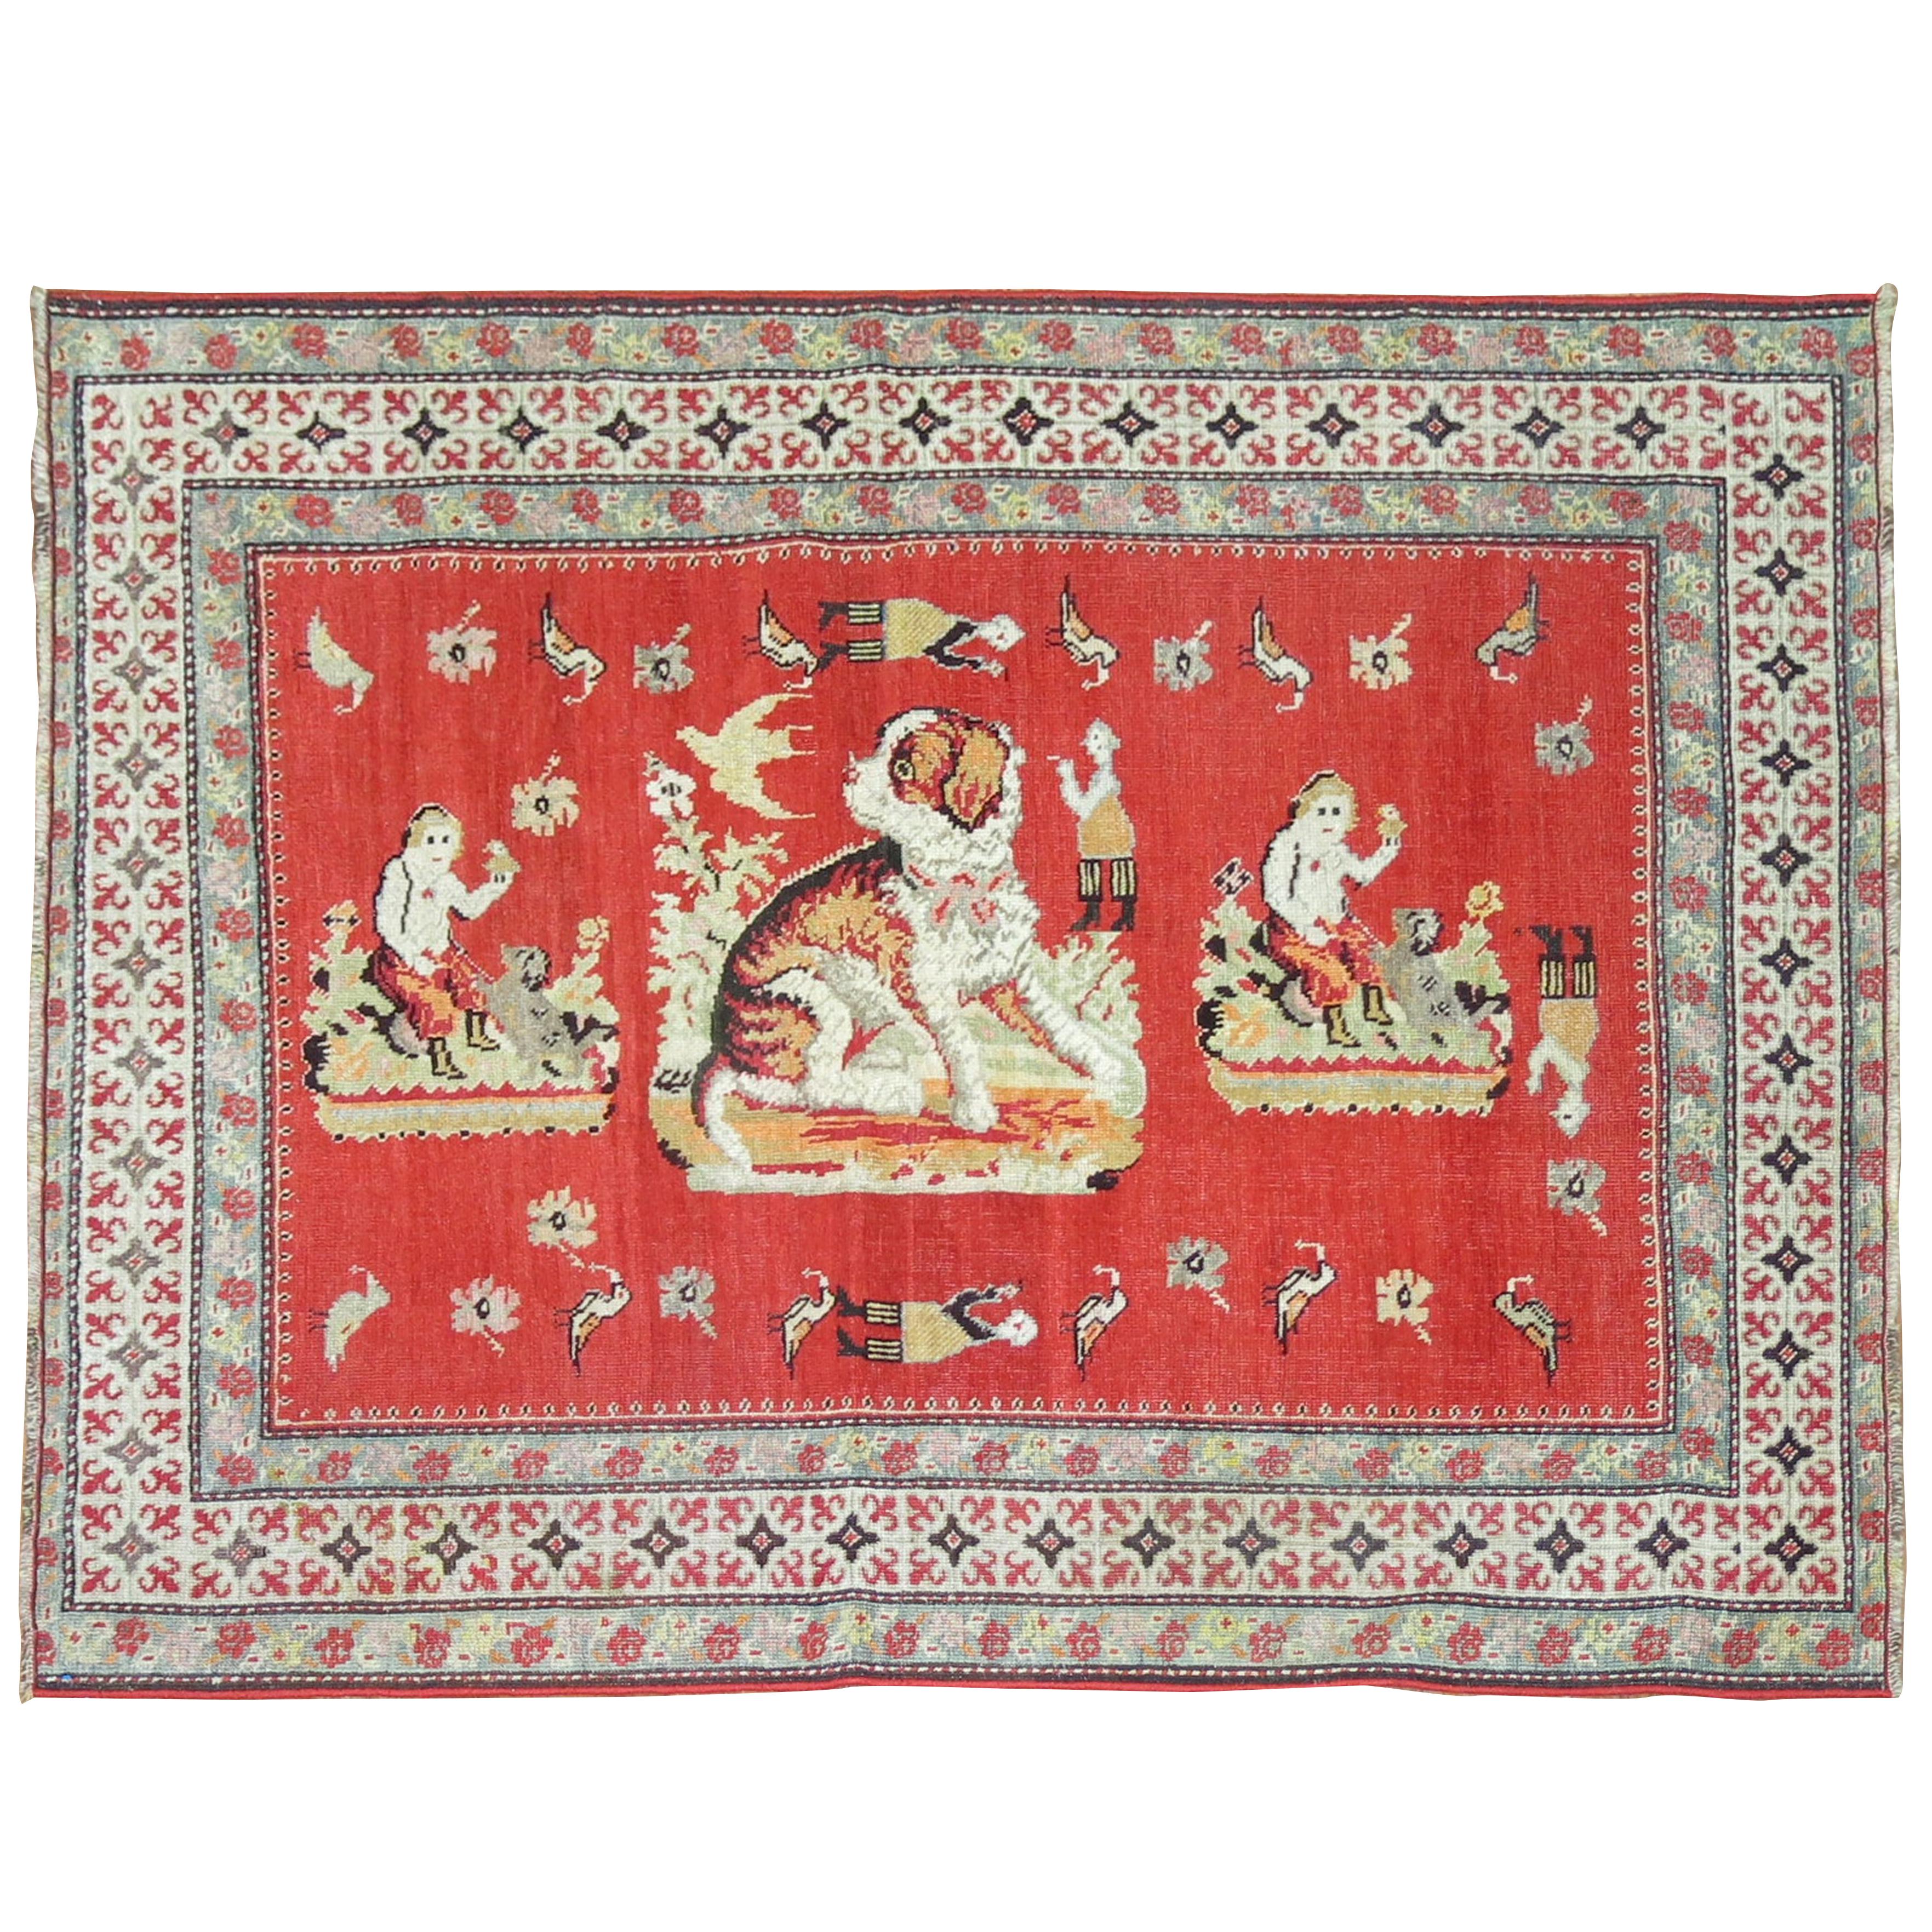 Pictorial Antiker Karabagh-Teppich mit Hund und Tier